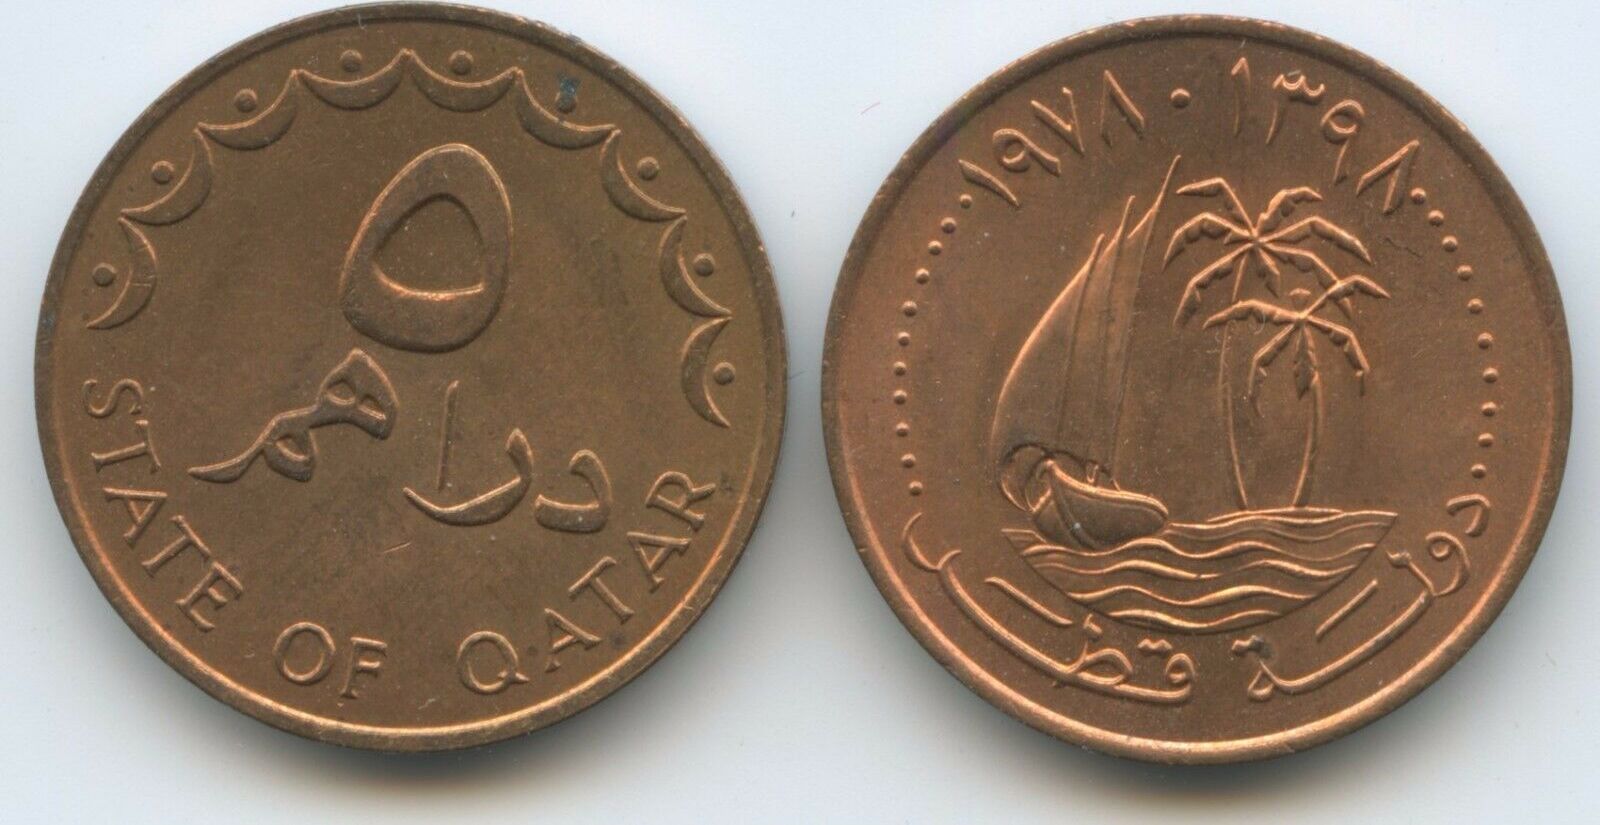 150 000 дирхам. 5 Дирхамов. Дирхамы монеты. Арабская монета State of Qatar. 3 Дирхама.